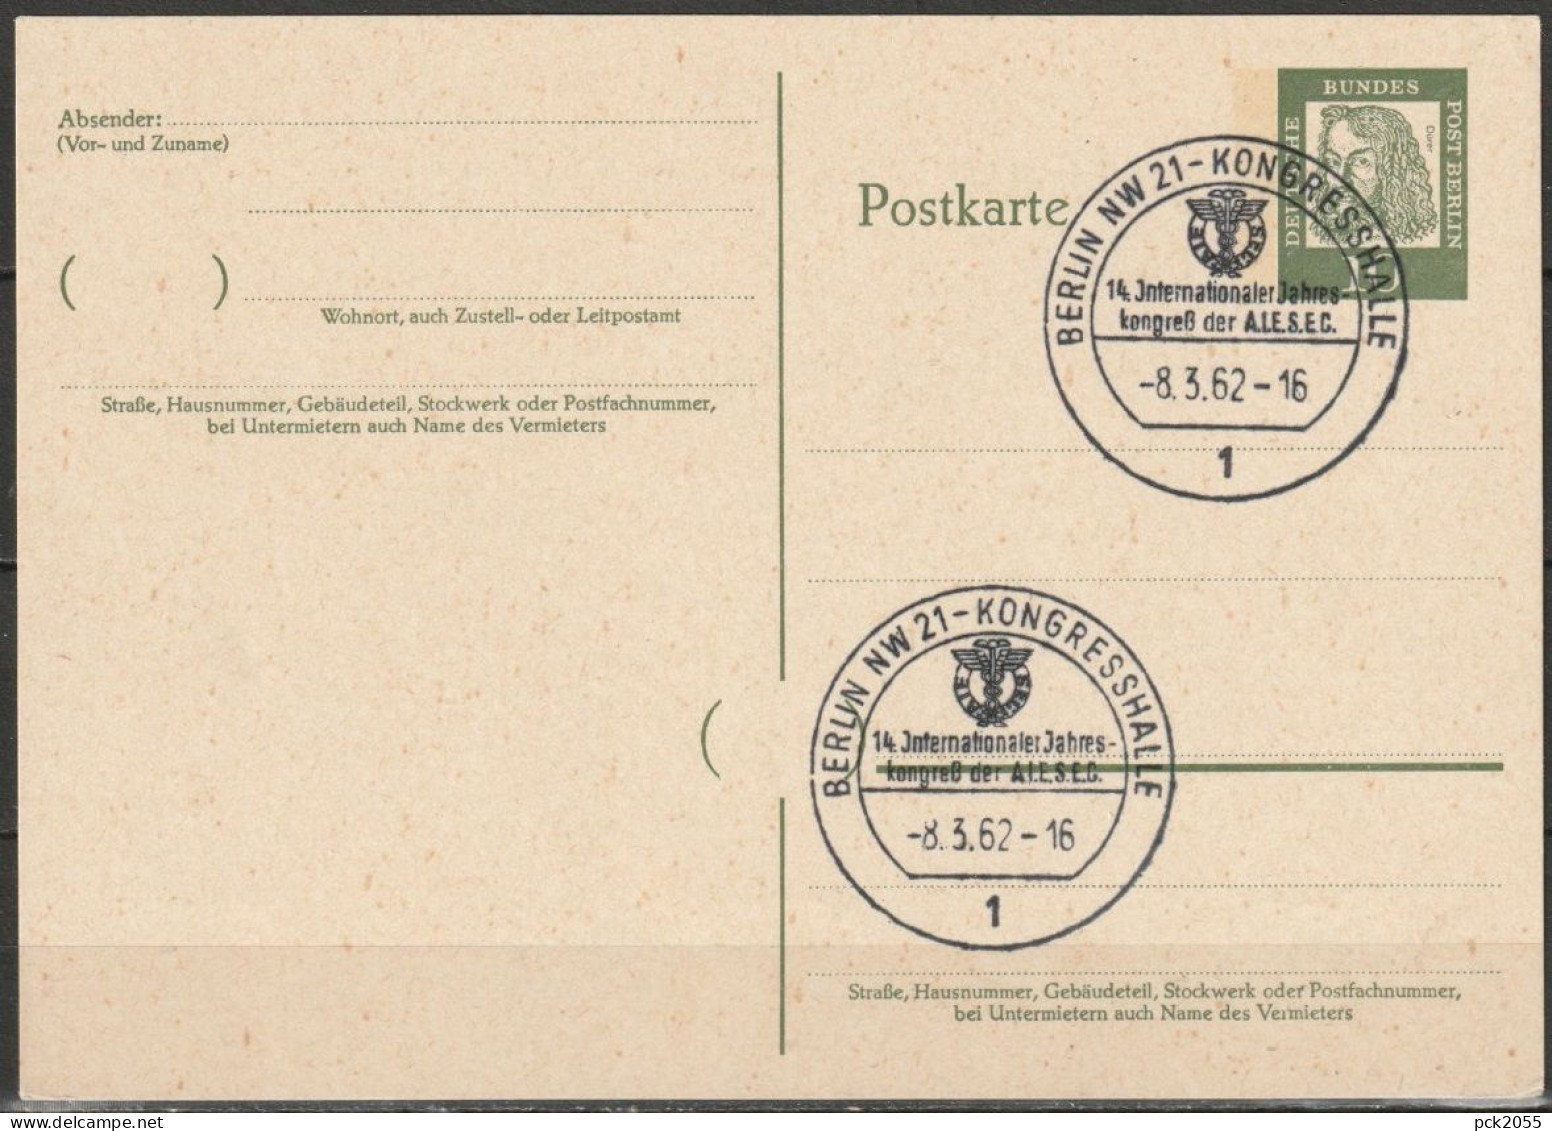 Berlin Ganzsache 1961 Mi.-Nr. P 51 Sonderstempel BERLIN-Kongresshalle 8.3.62  ( PK 222 ) - Postkaarten - Gebruikt